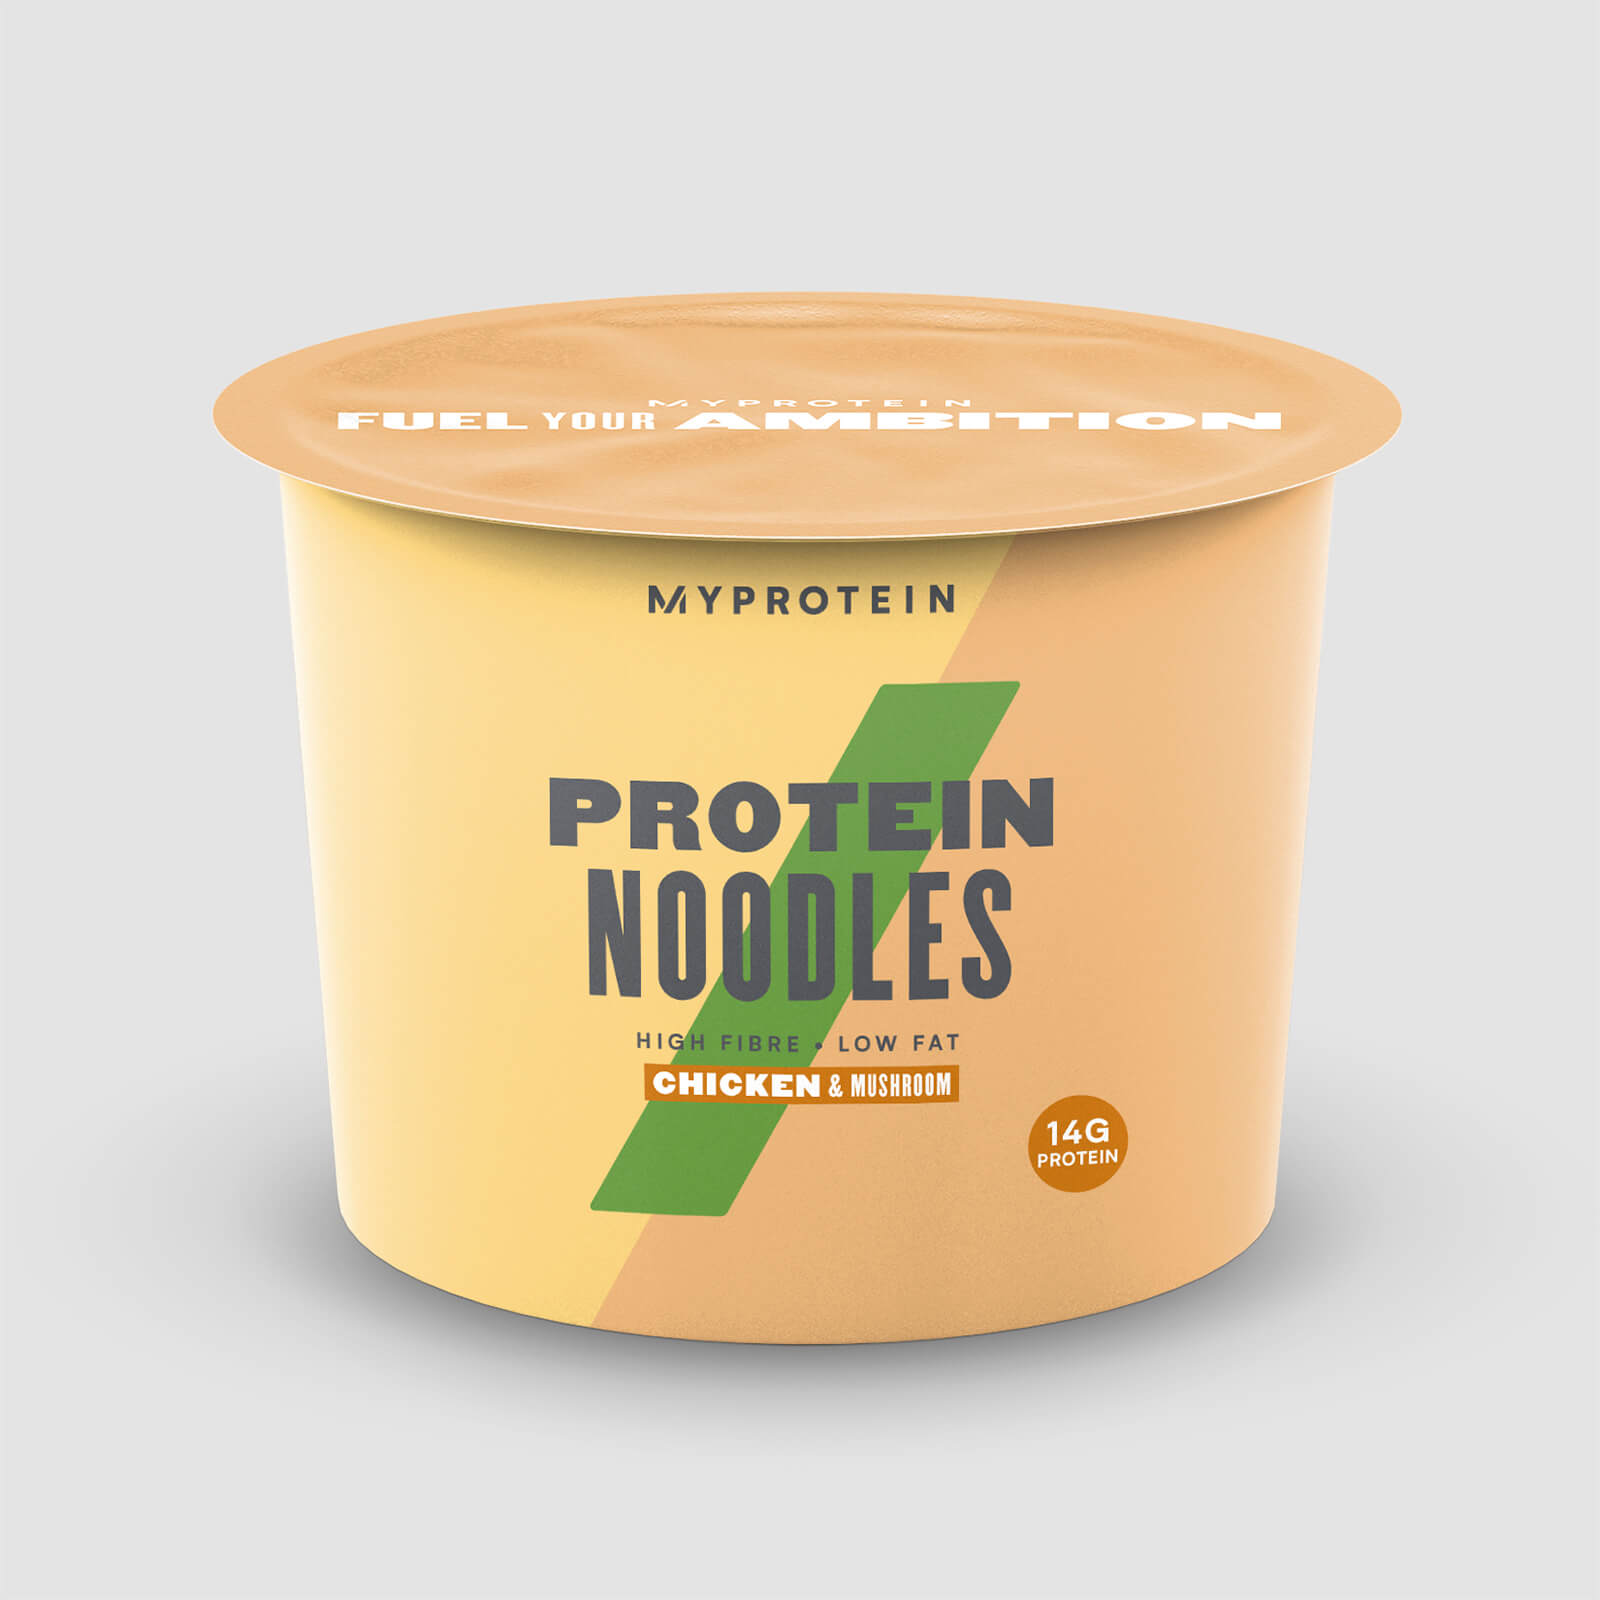 Myprotein Protein Noodle Snack Pot - 6 x 65g - Chicken & Mushroom